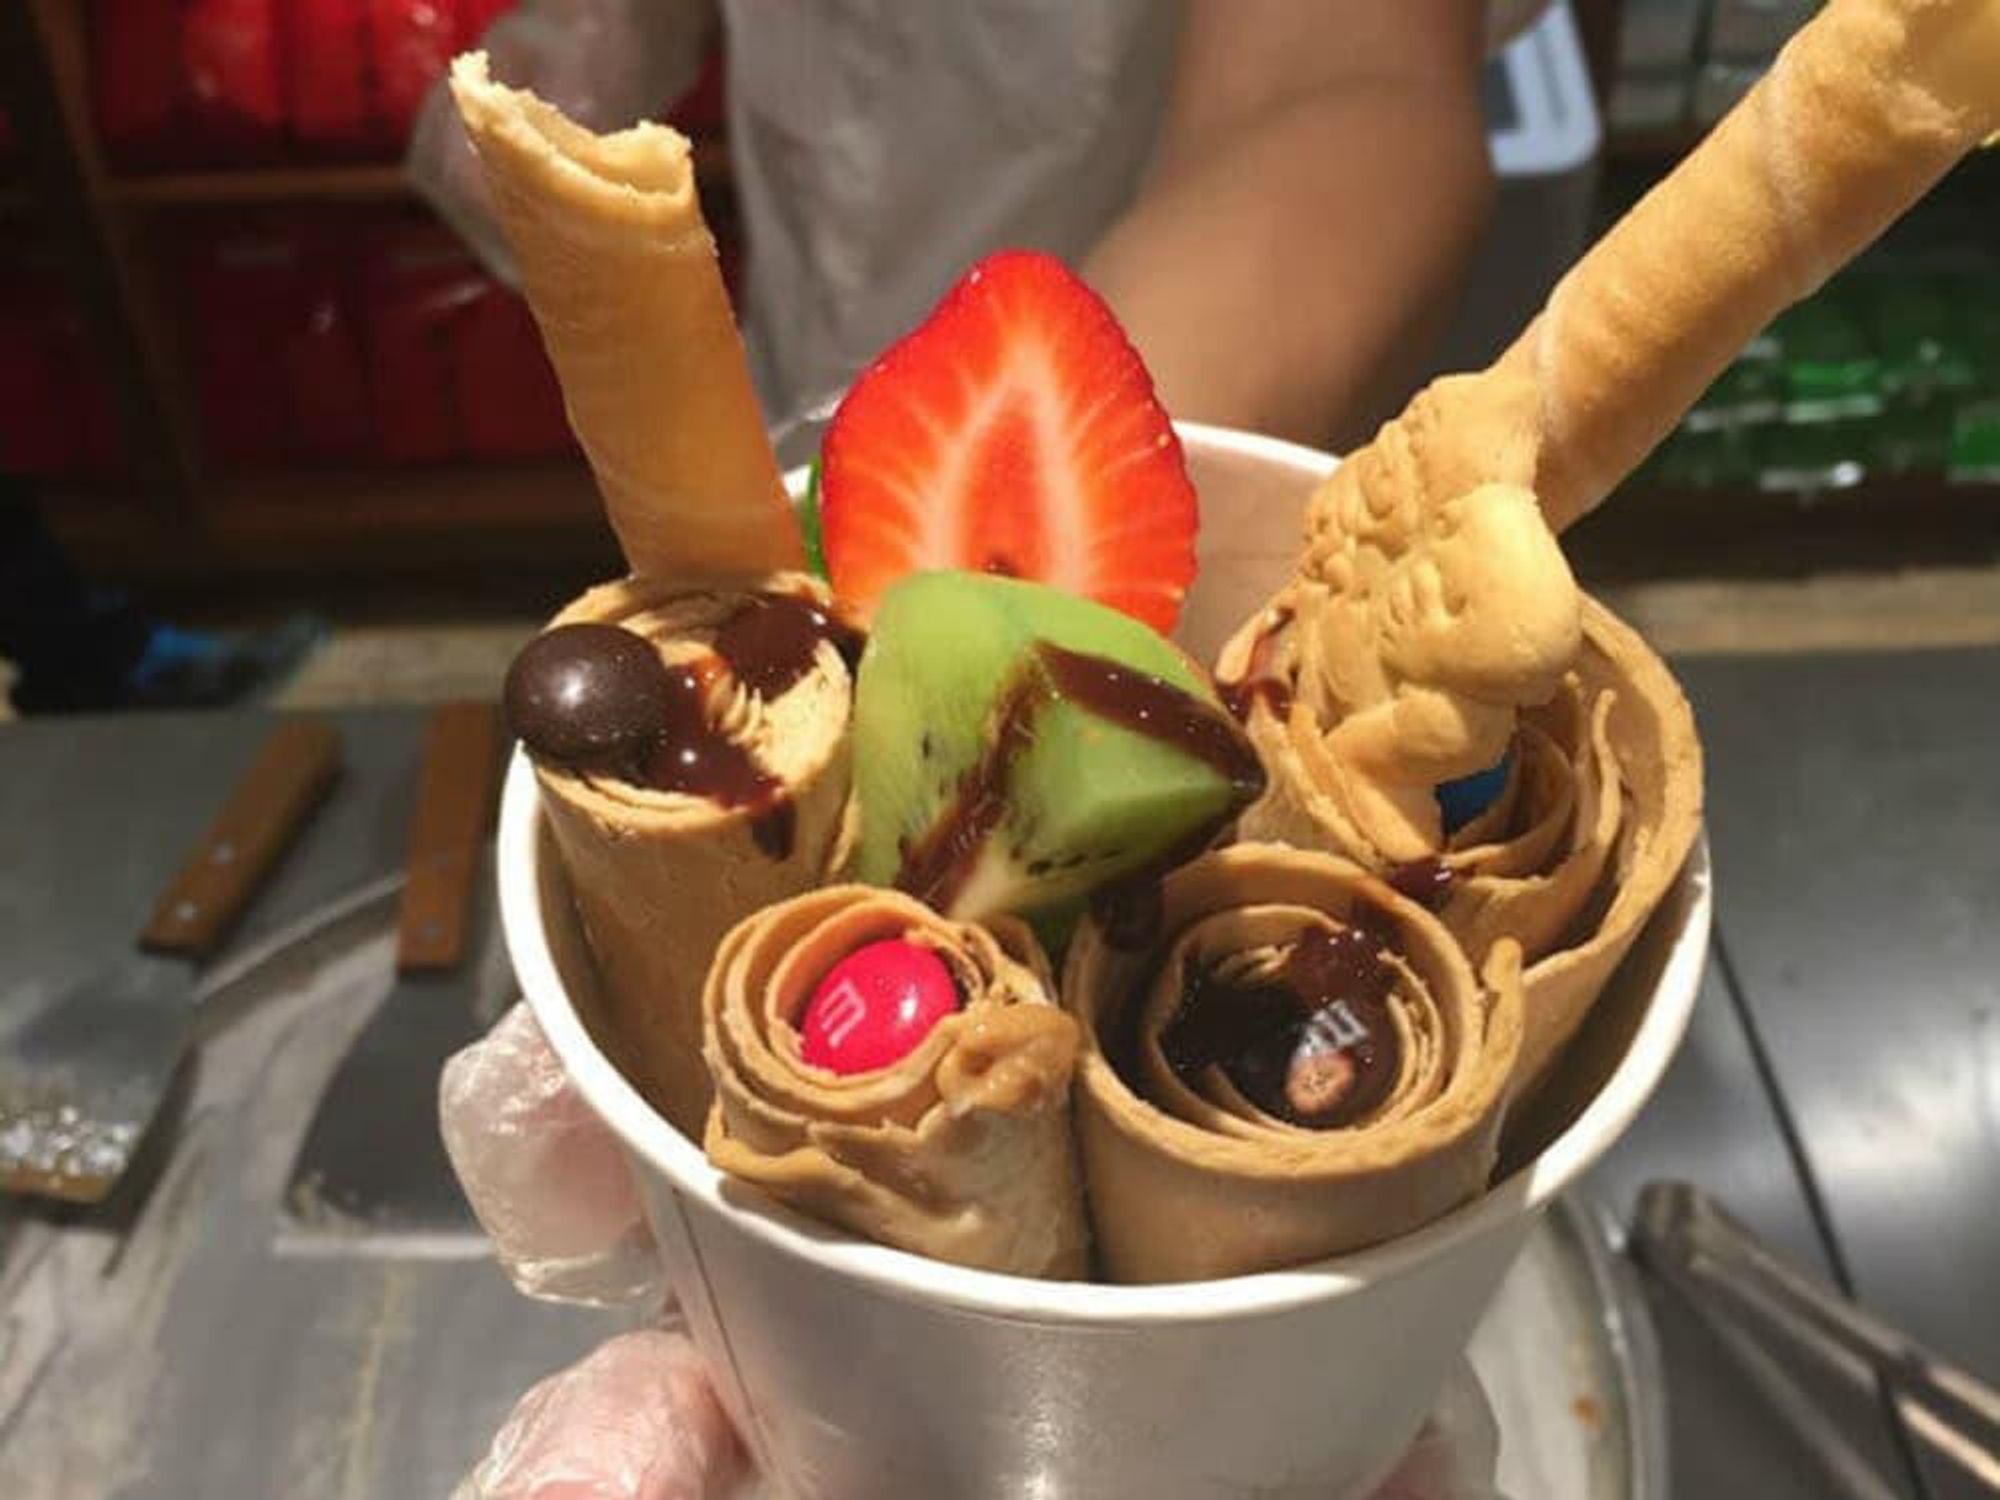 Thai rolled ice cream